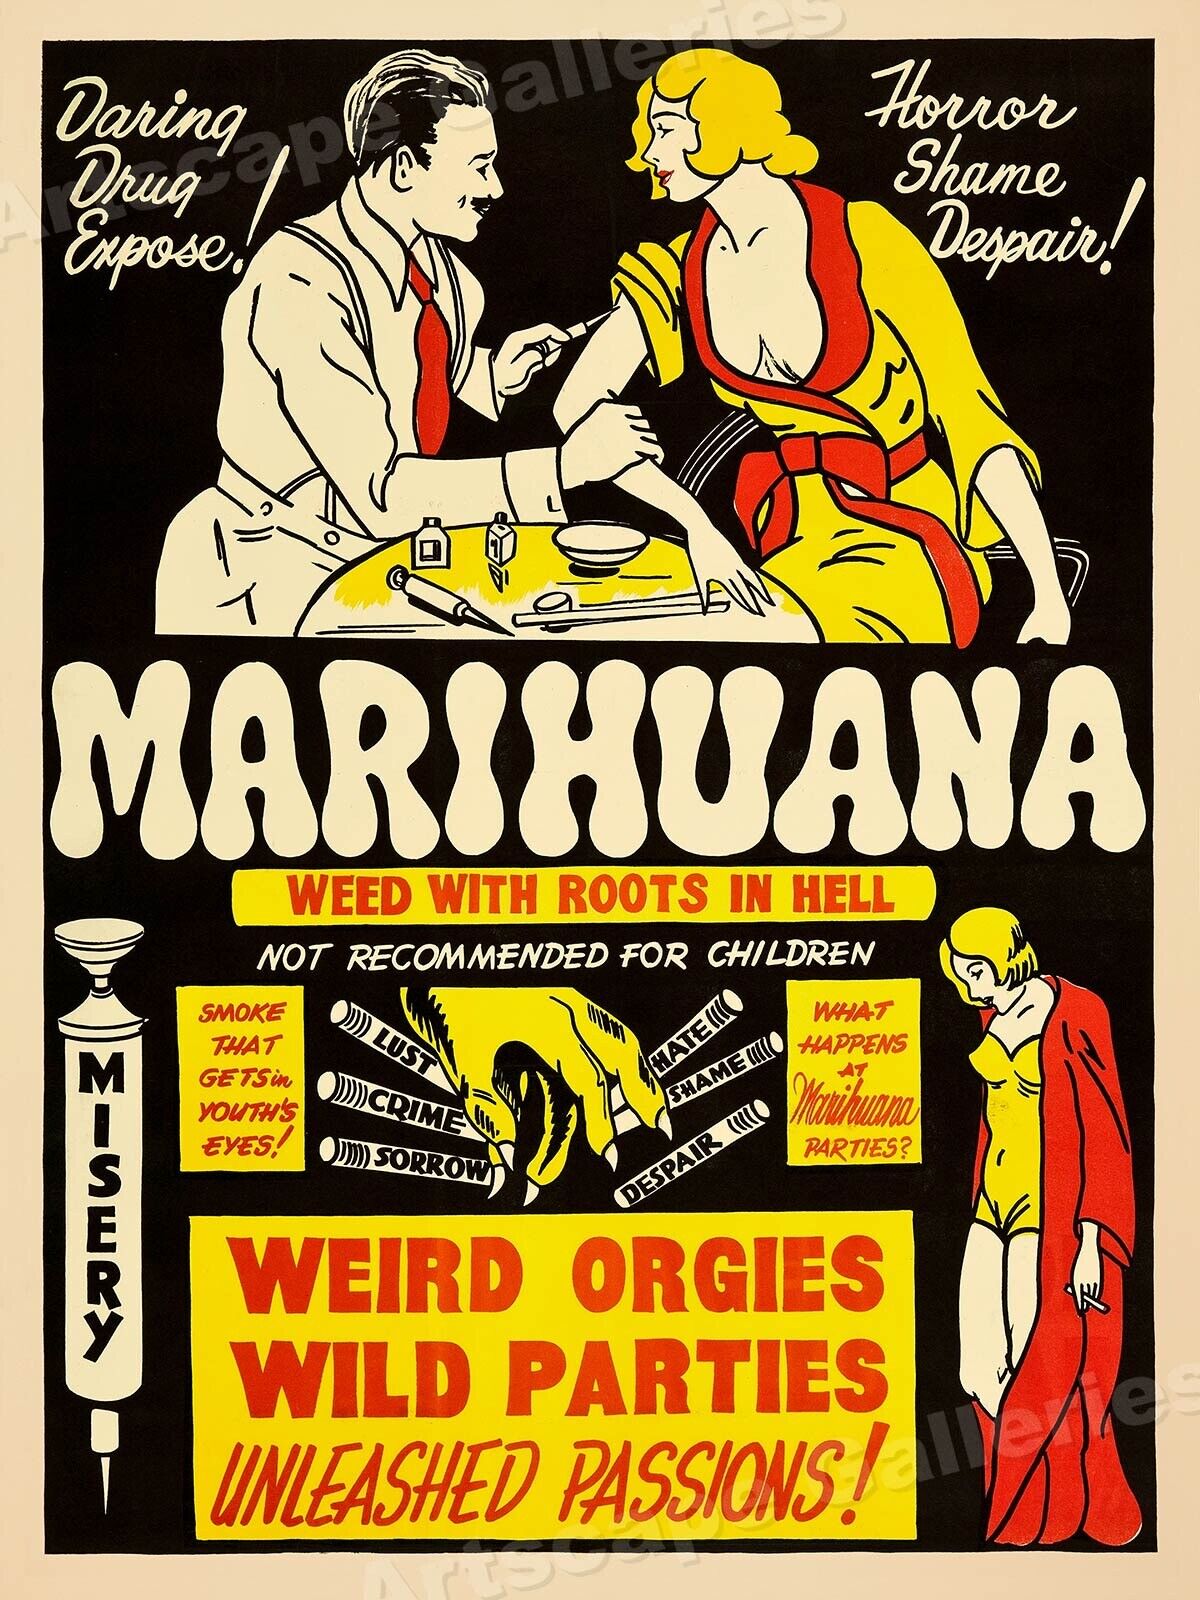 Marijuana 1930s Smoking Reefer Madness Vintage Style Movie Poster - 18x24